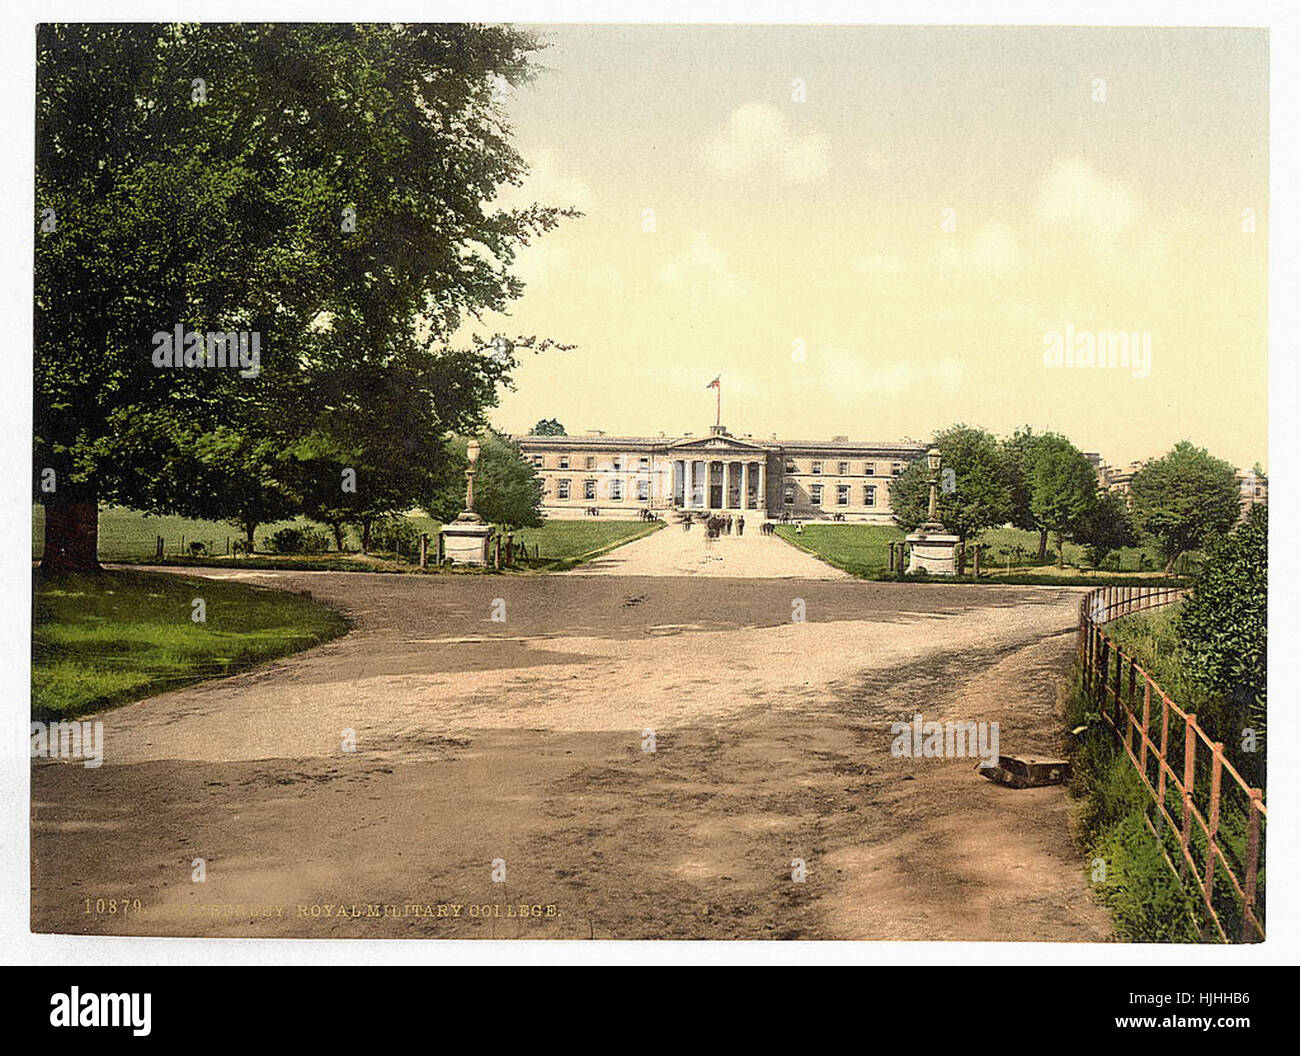 Collège militaire royal de Sandhurst, Camberley, Angleterre - Photochrom xixème siècle Banque D'Images